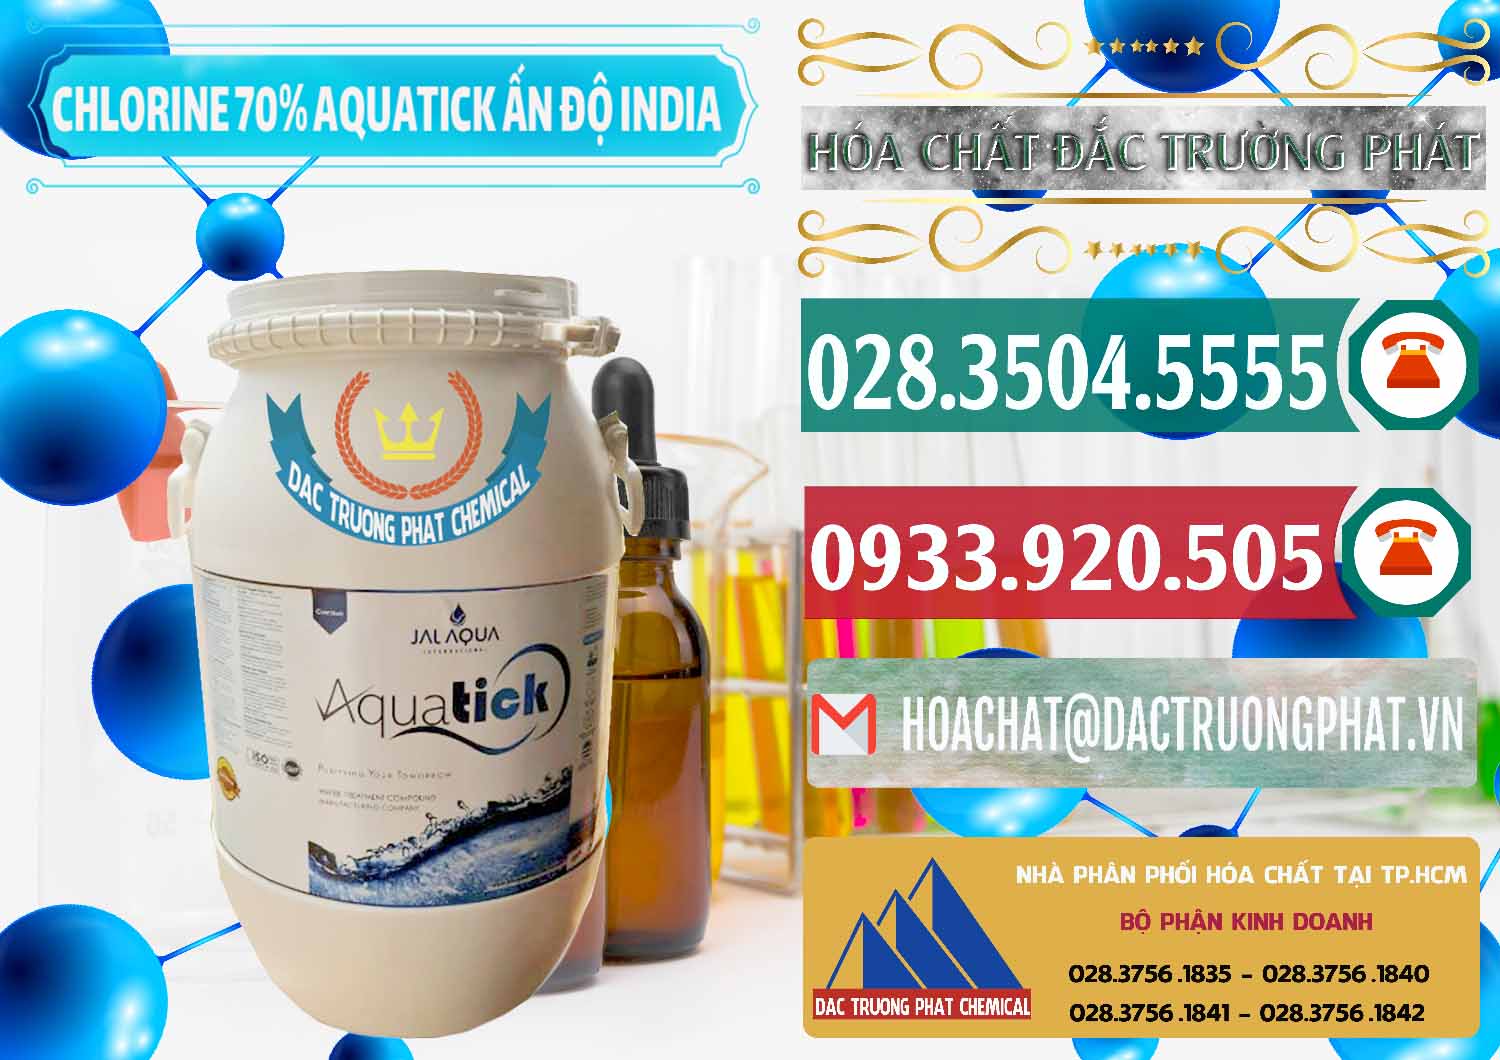 Cty bán ( cung ứng ) Chlorine – Clorin 70% Aquatick Jal Aqua Ấn Độ India - 0215 - Nhà nhập khẩu và phân phối hóa chất tại TP.HCM - muabanhoachat.vn